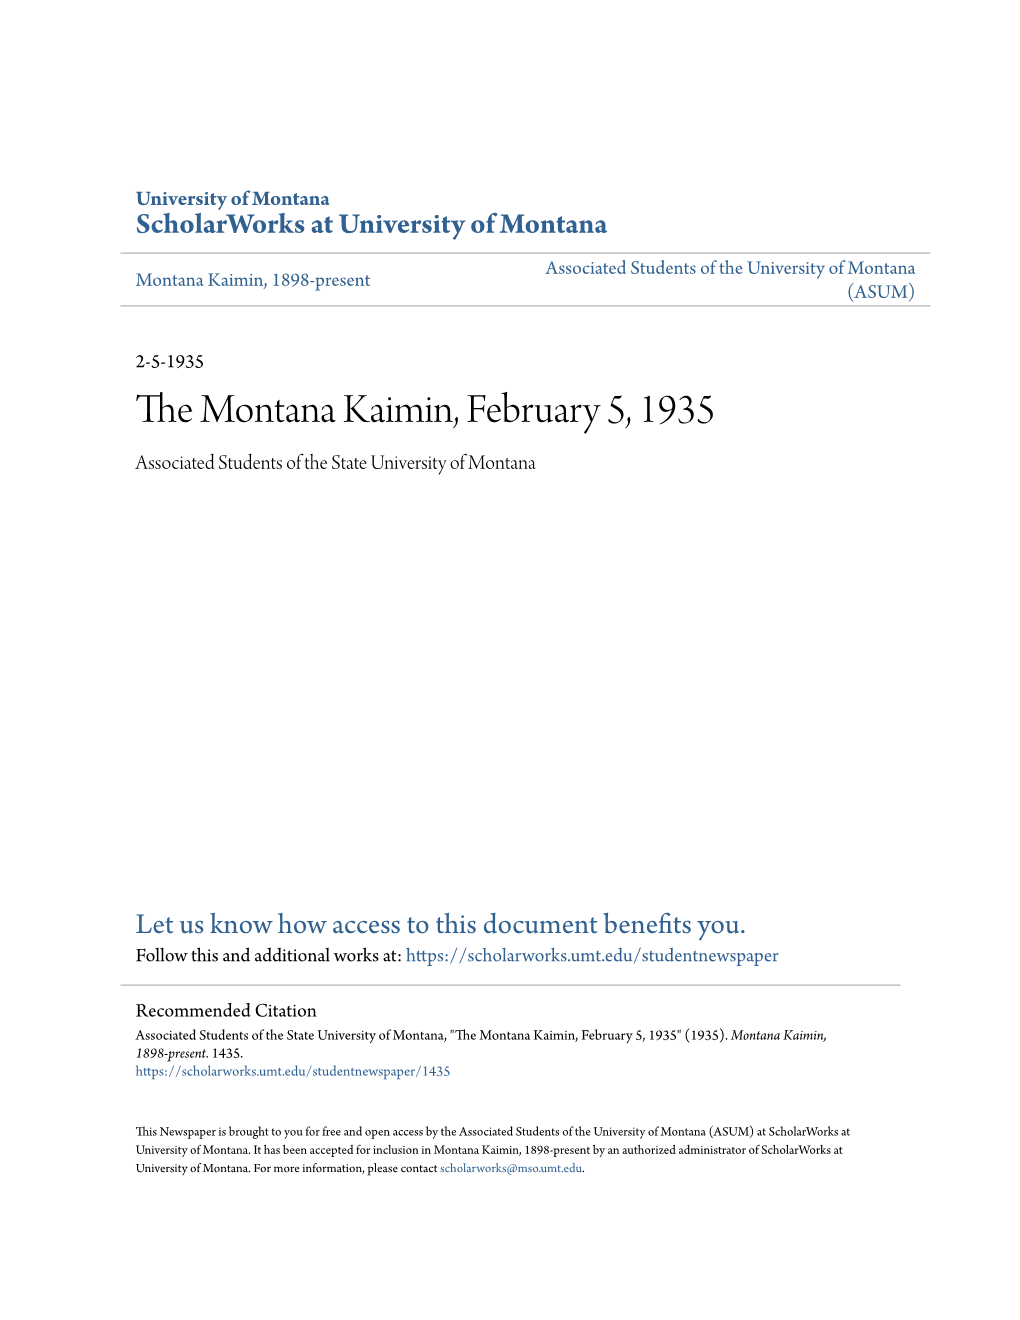 The Montana Kaimin, February 5, 1935